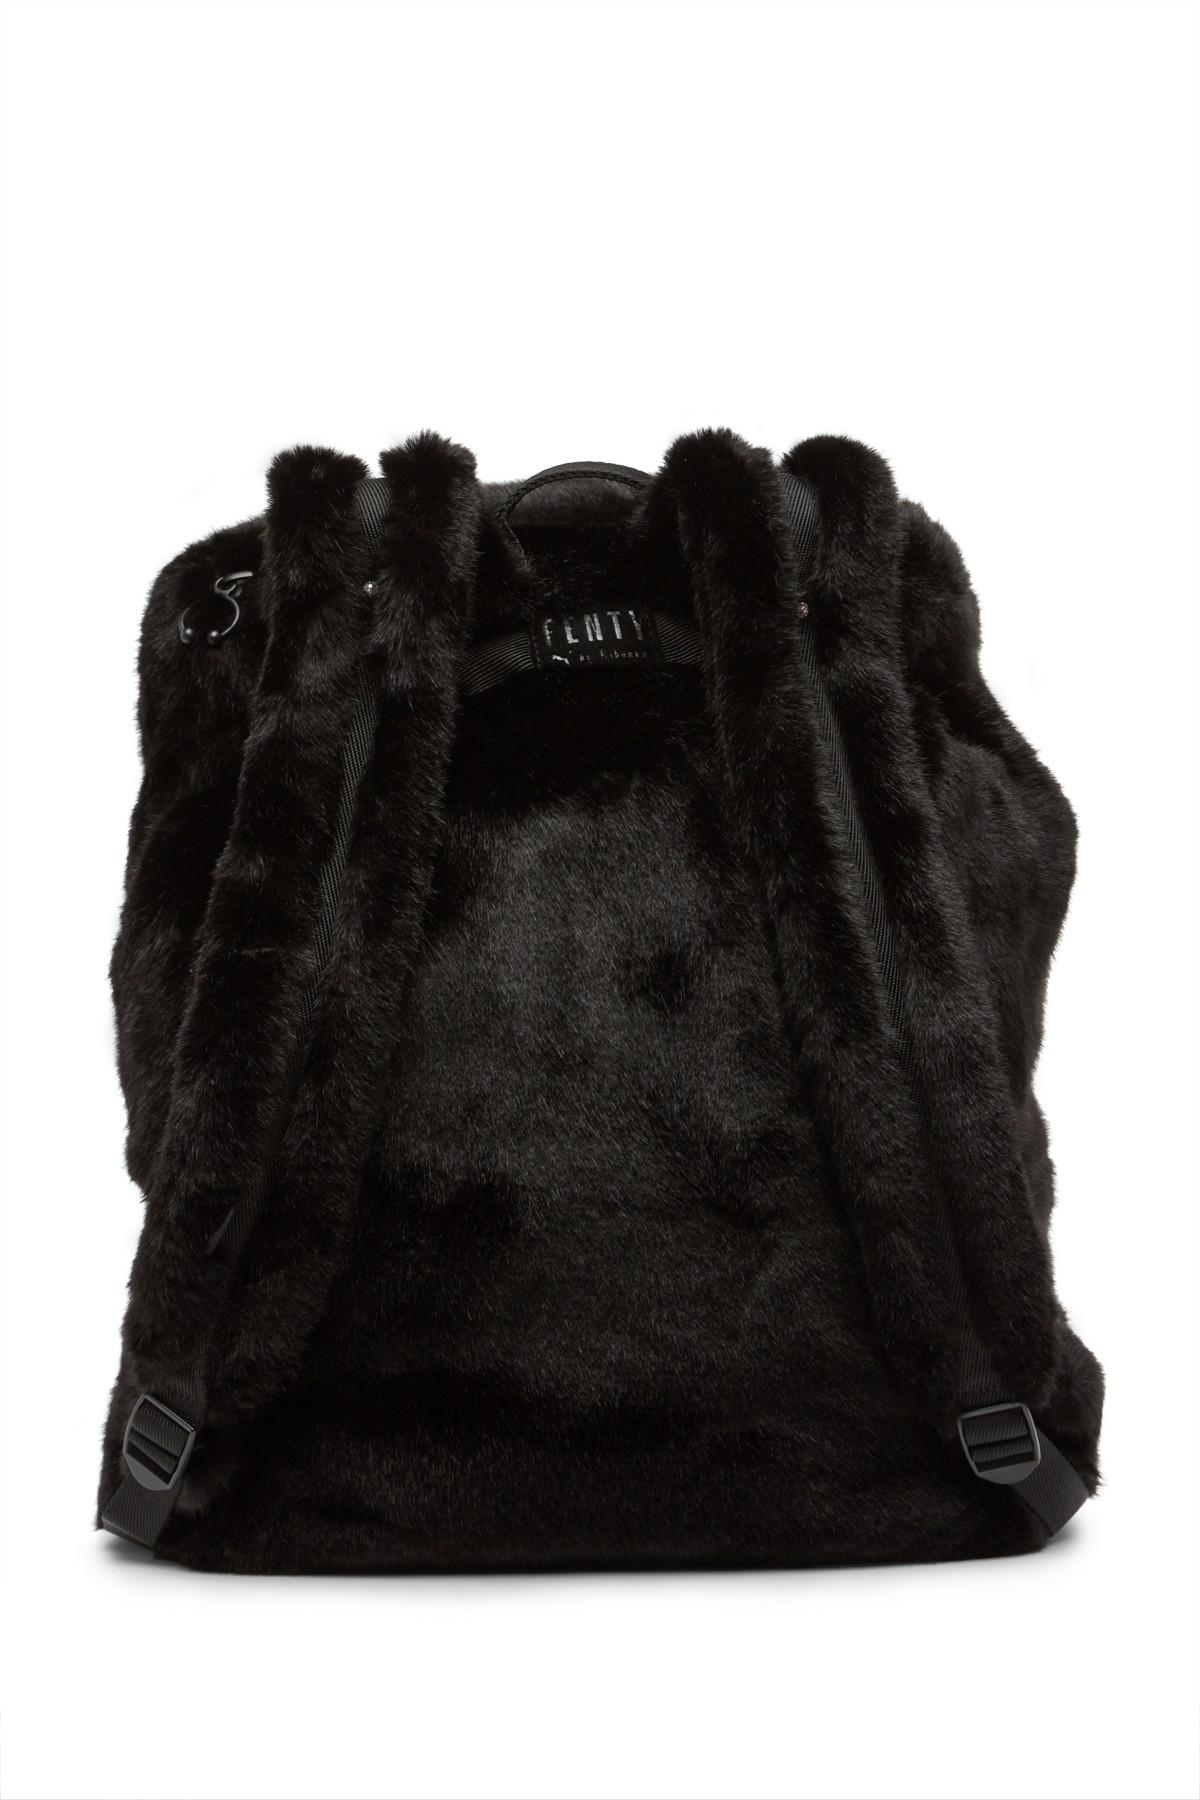 PUMA Fenty By Rihanna Faux Fur Backpack in Black | Lyst